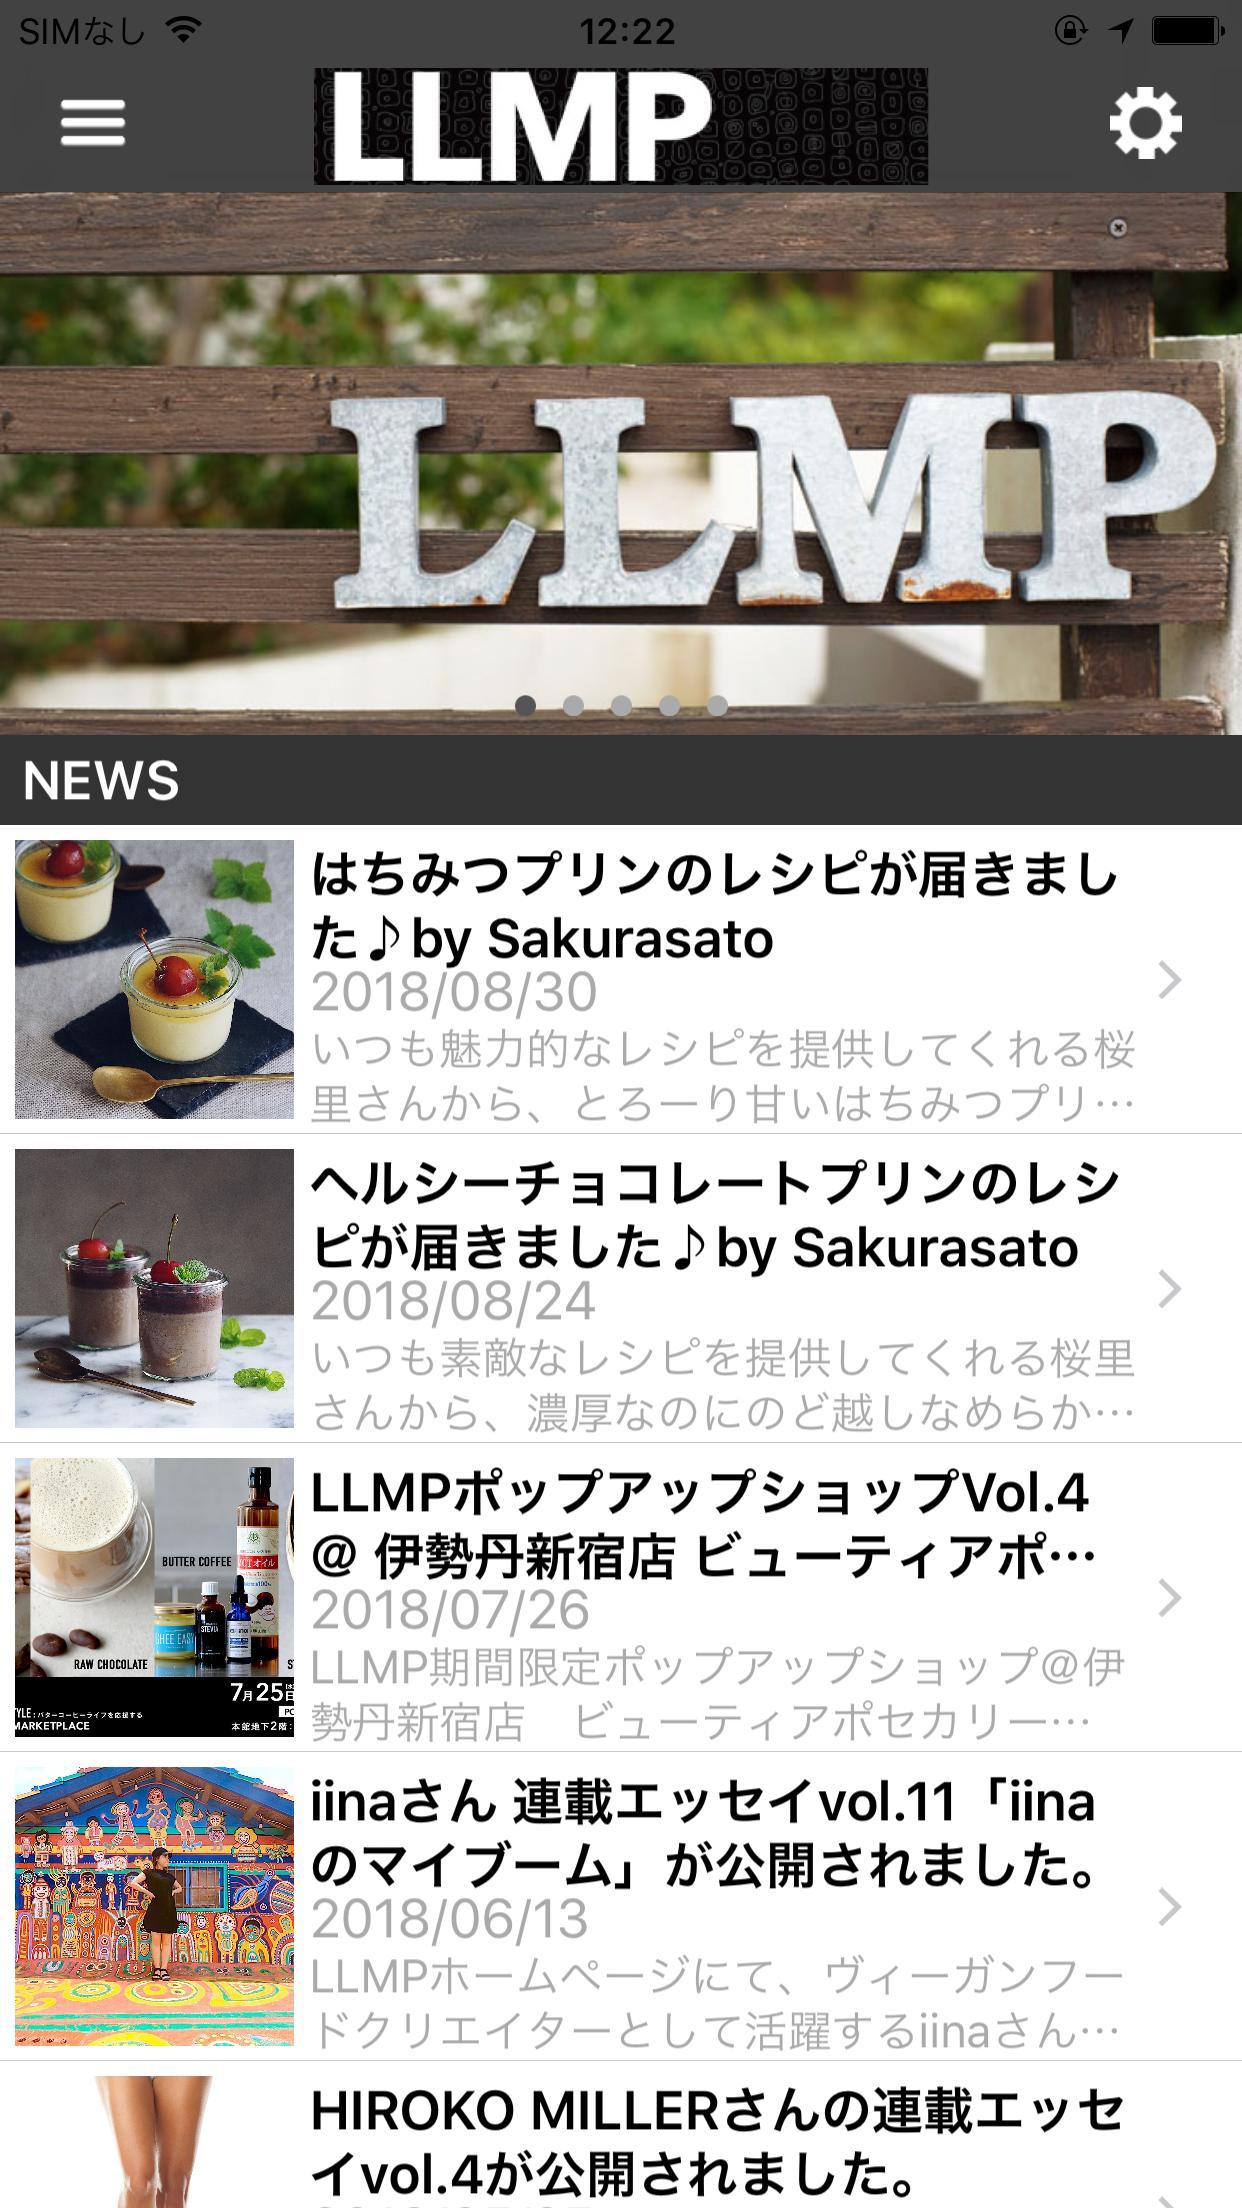 スーパーフード ローフード オーガニック食材通販 Llmp For Android Apk Download